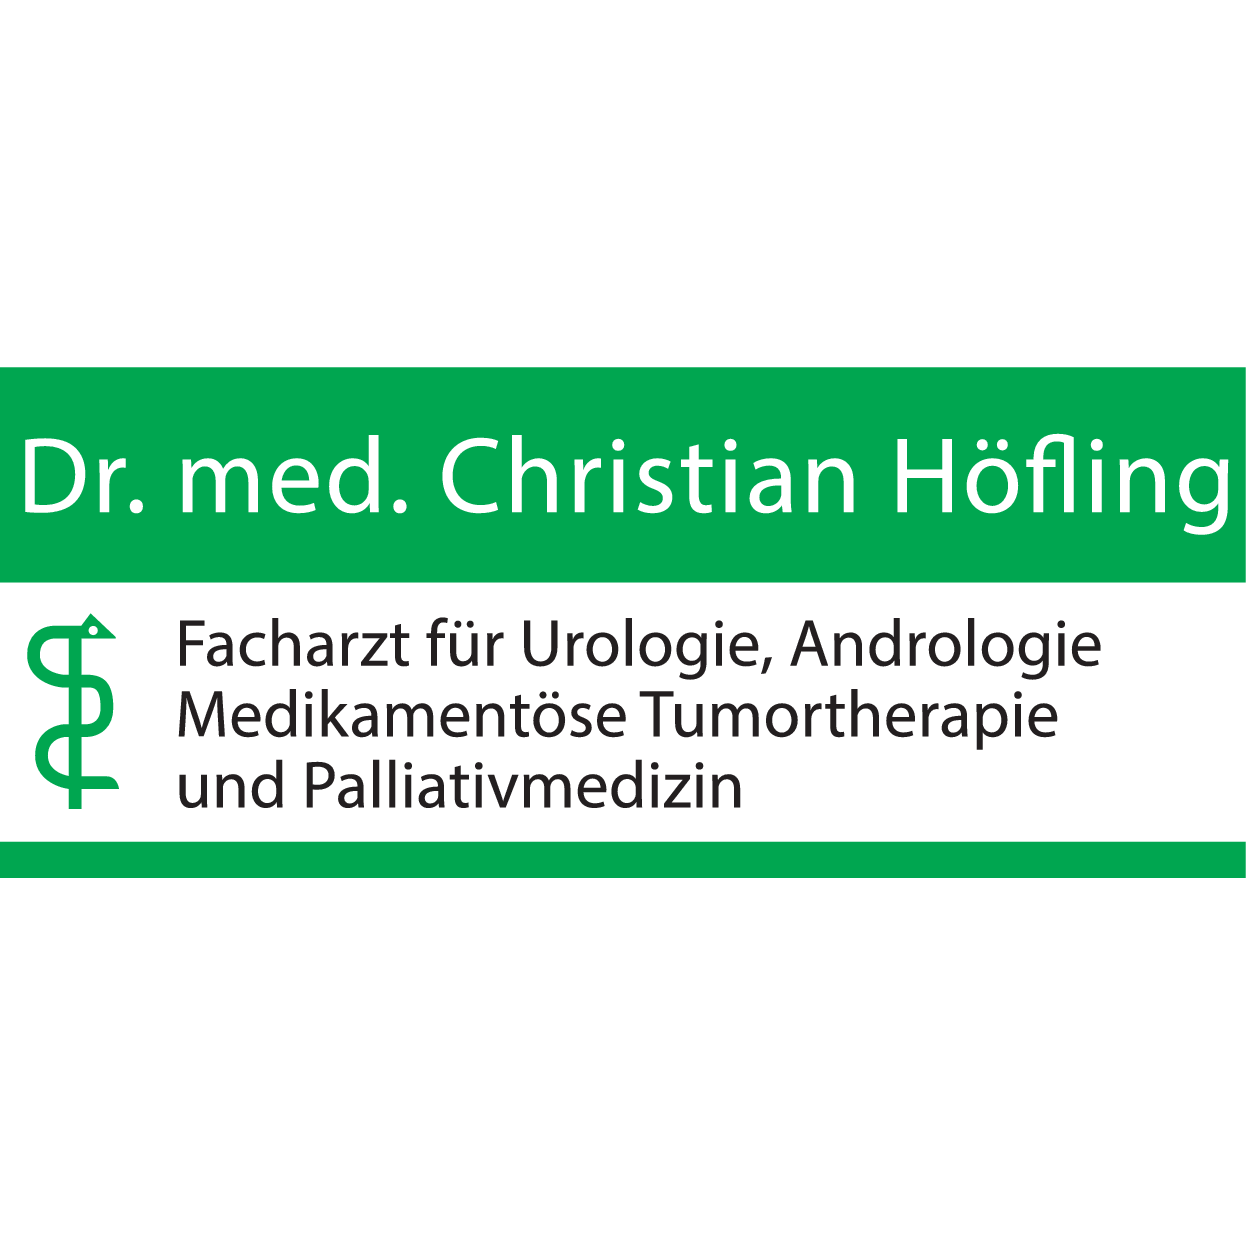 Dr. med. Christian Höfling Chemnitz 0371 6762752